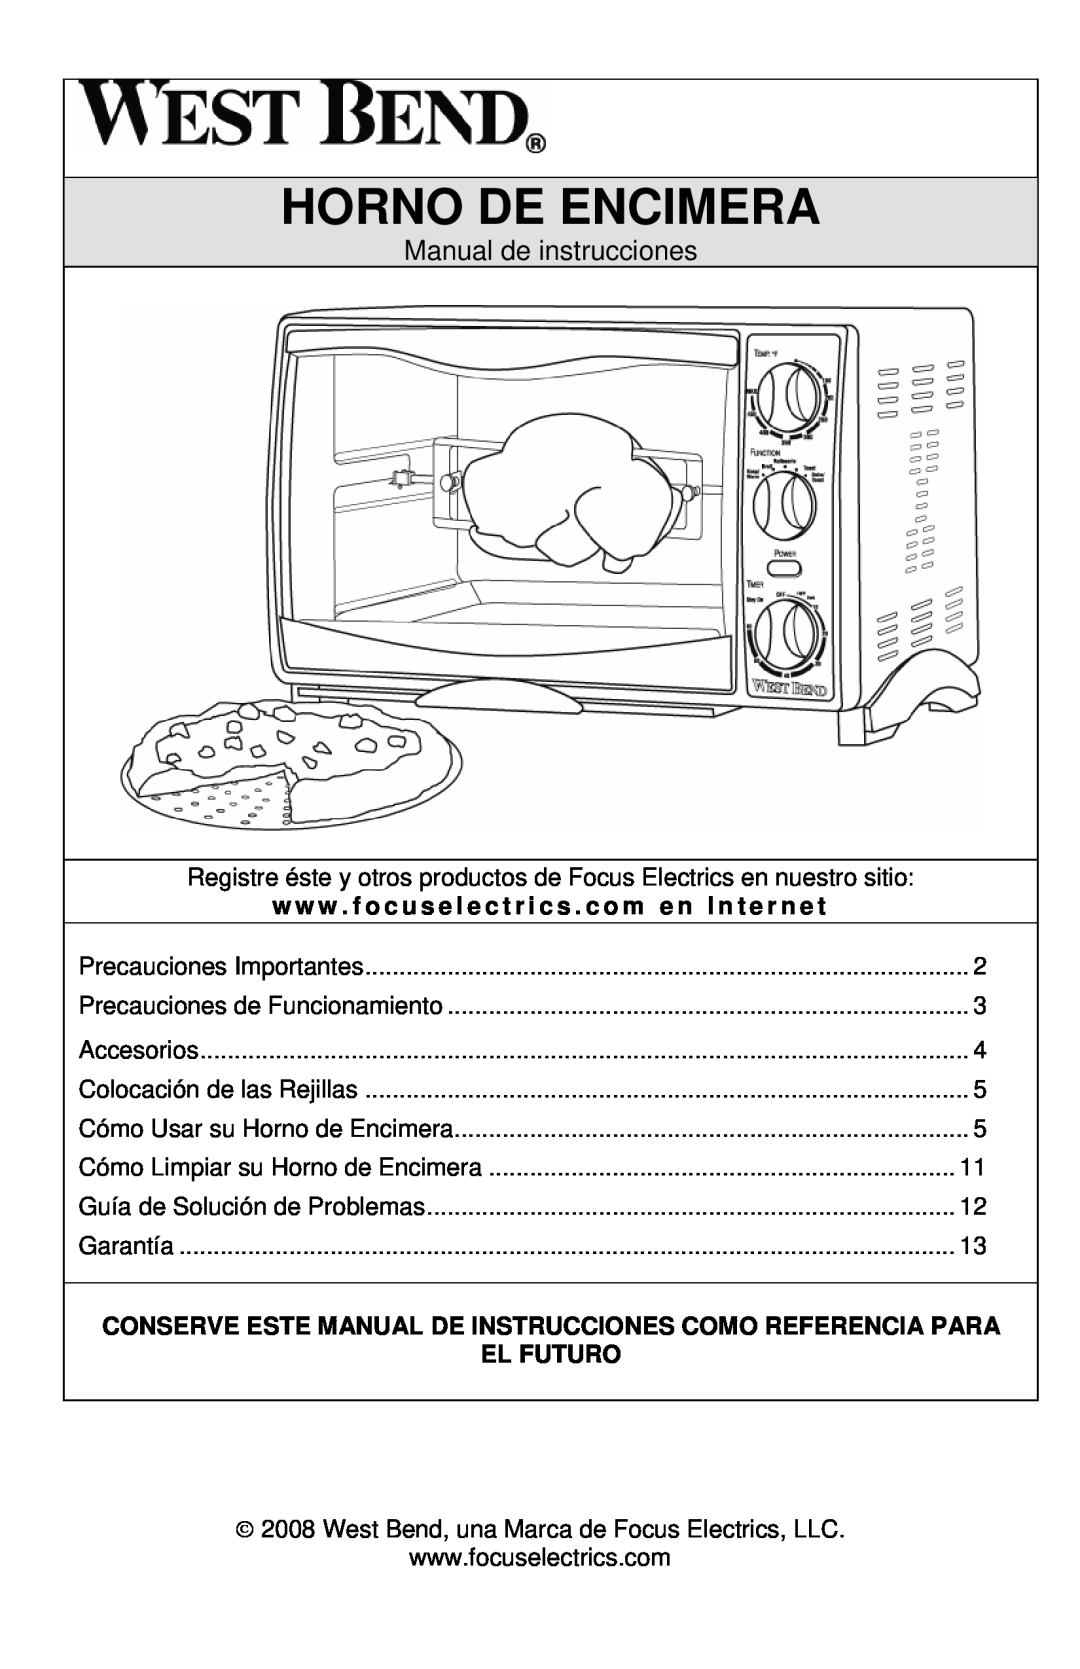 West Bend L5658B instruction manual Horno De Encimera, Manual de instrucciones, El Futuro 